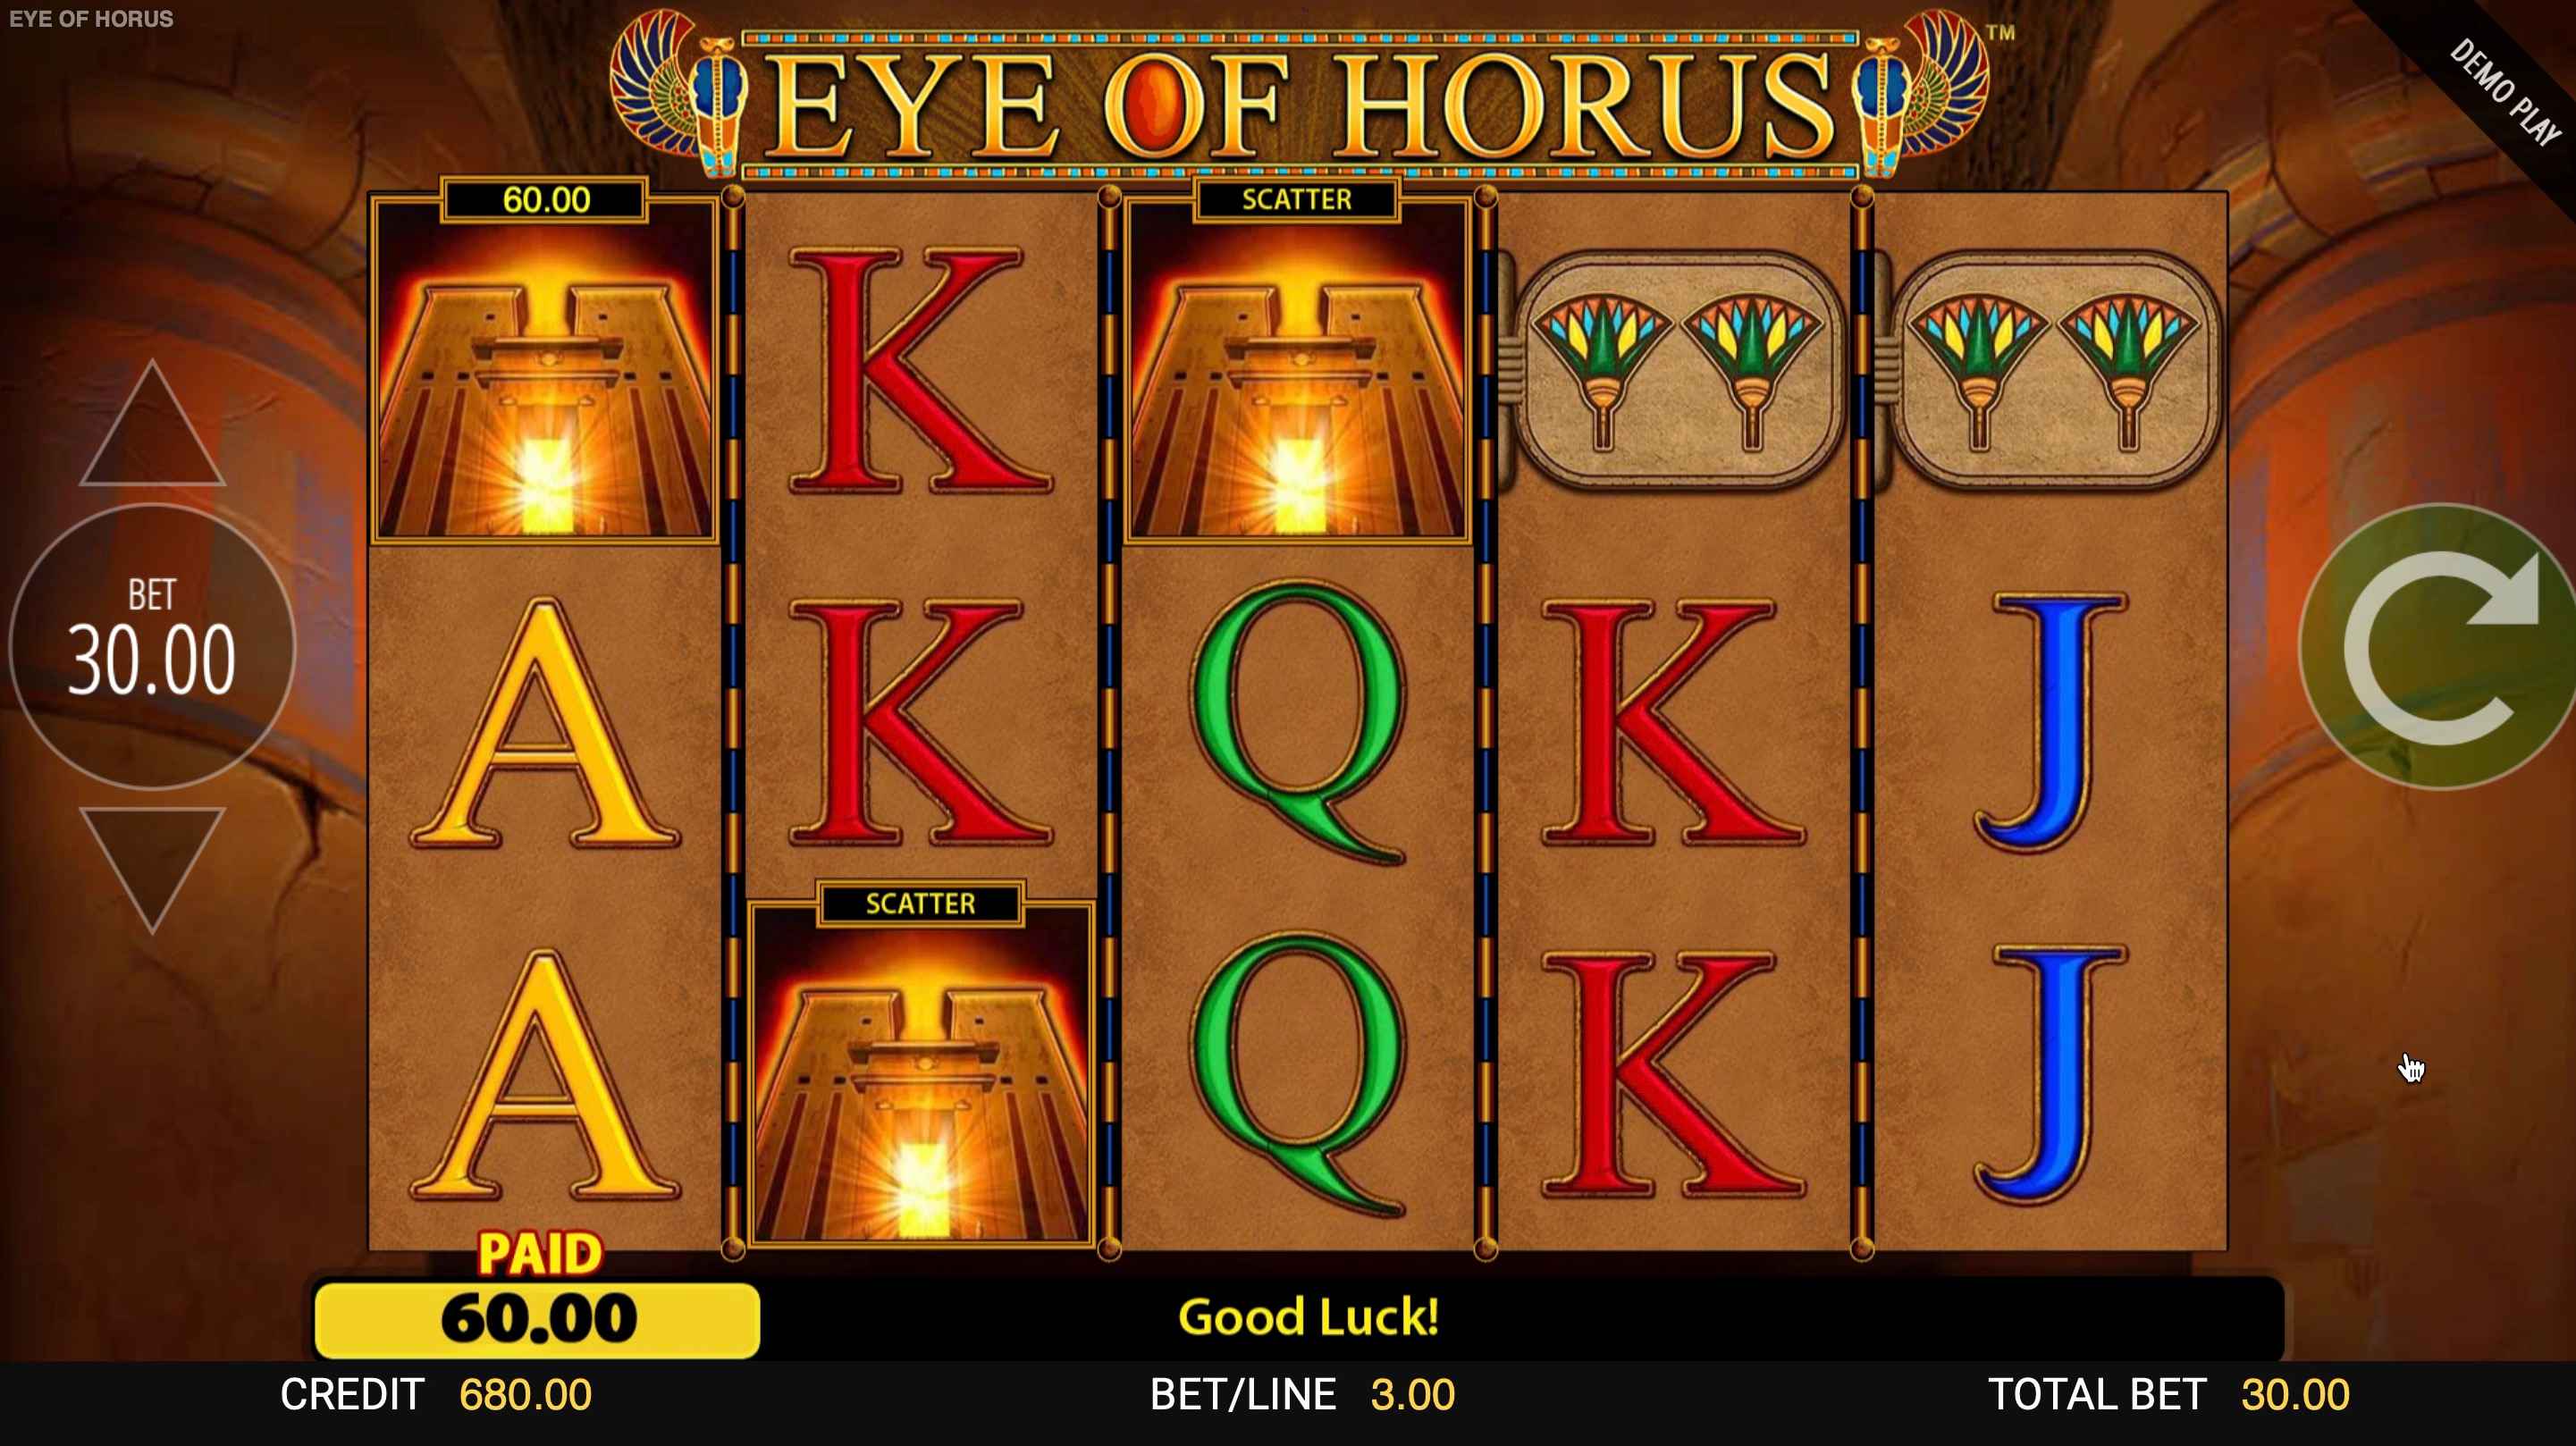 Eye of Horus slot 3 scatter